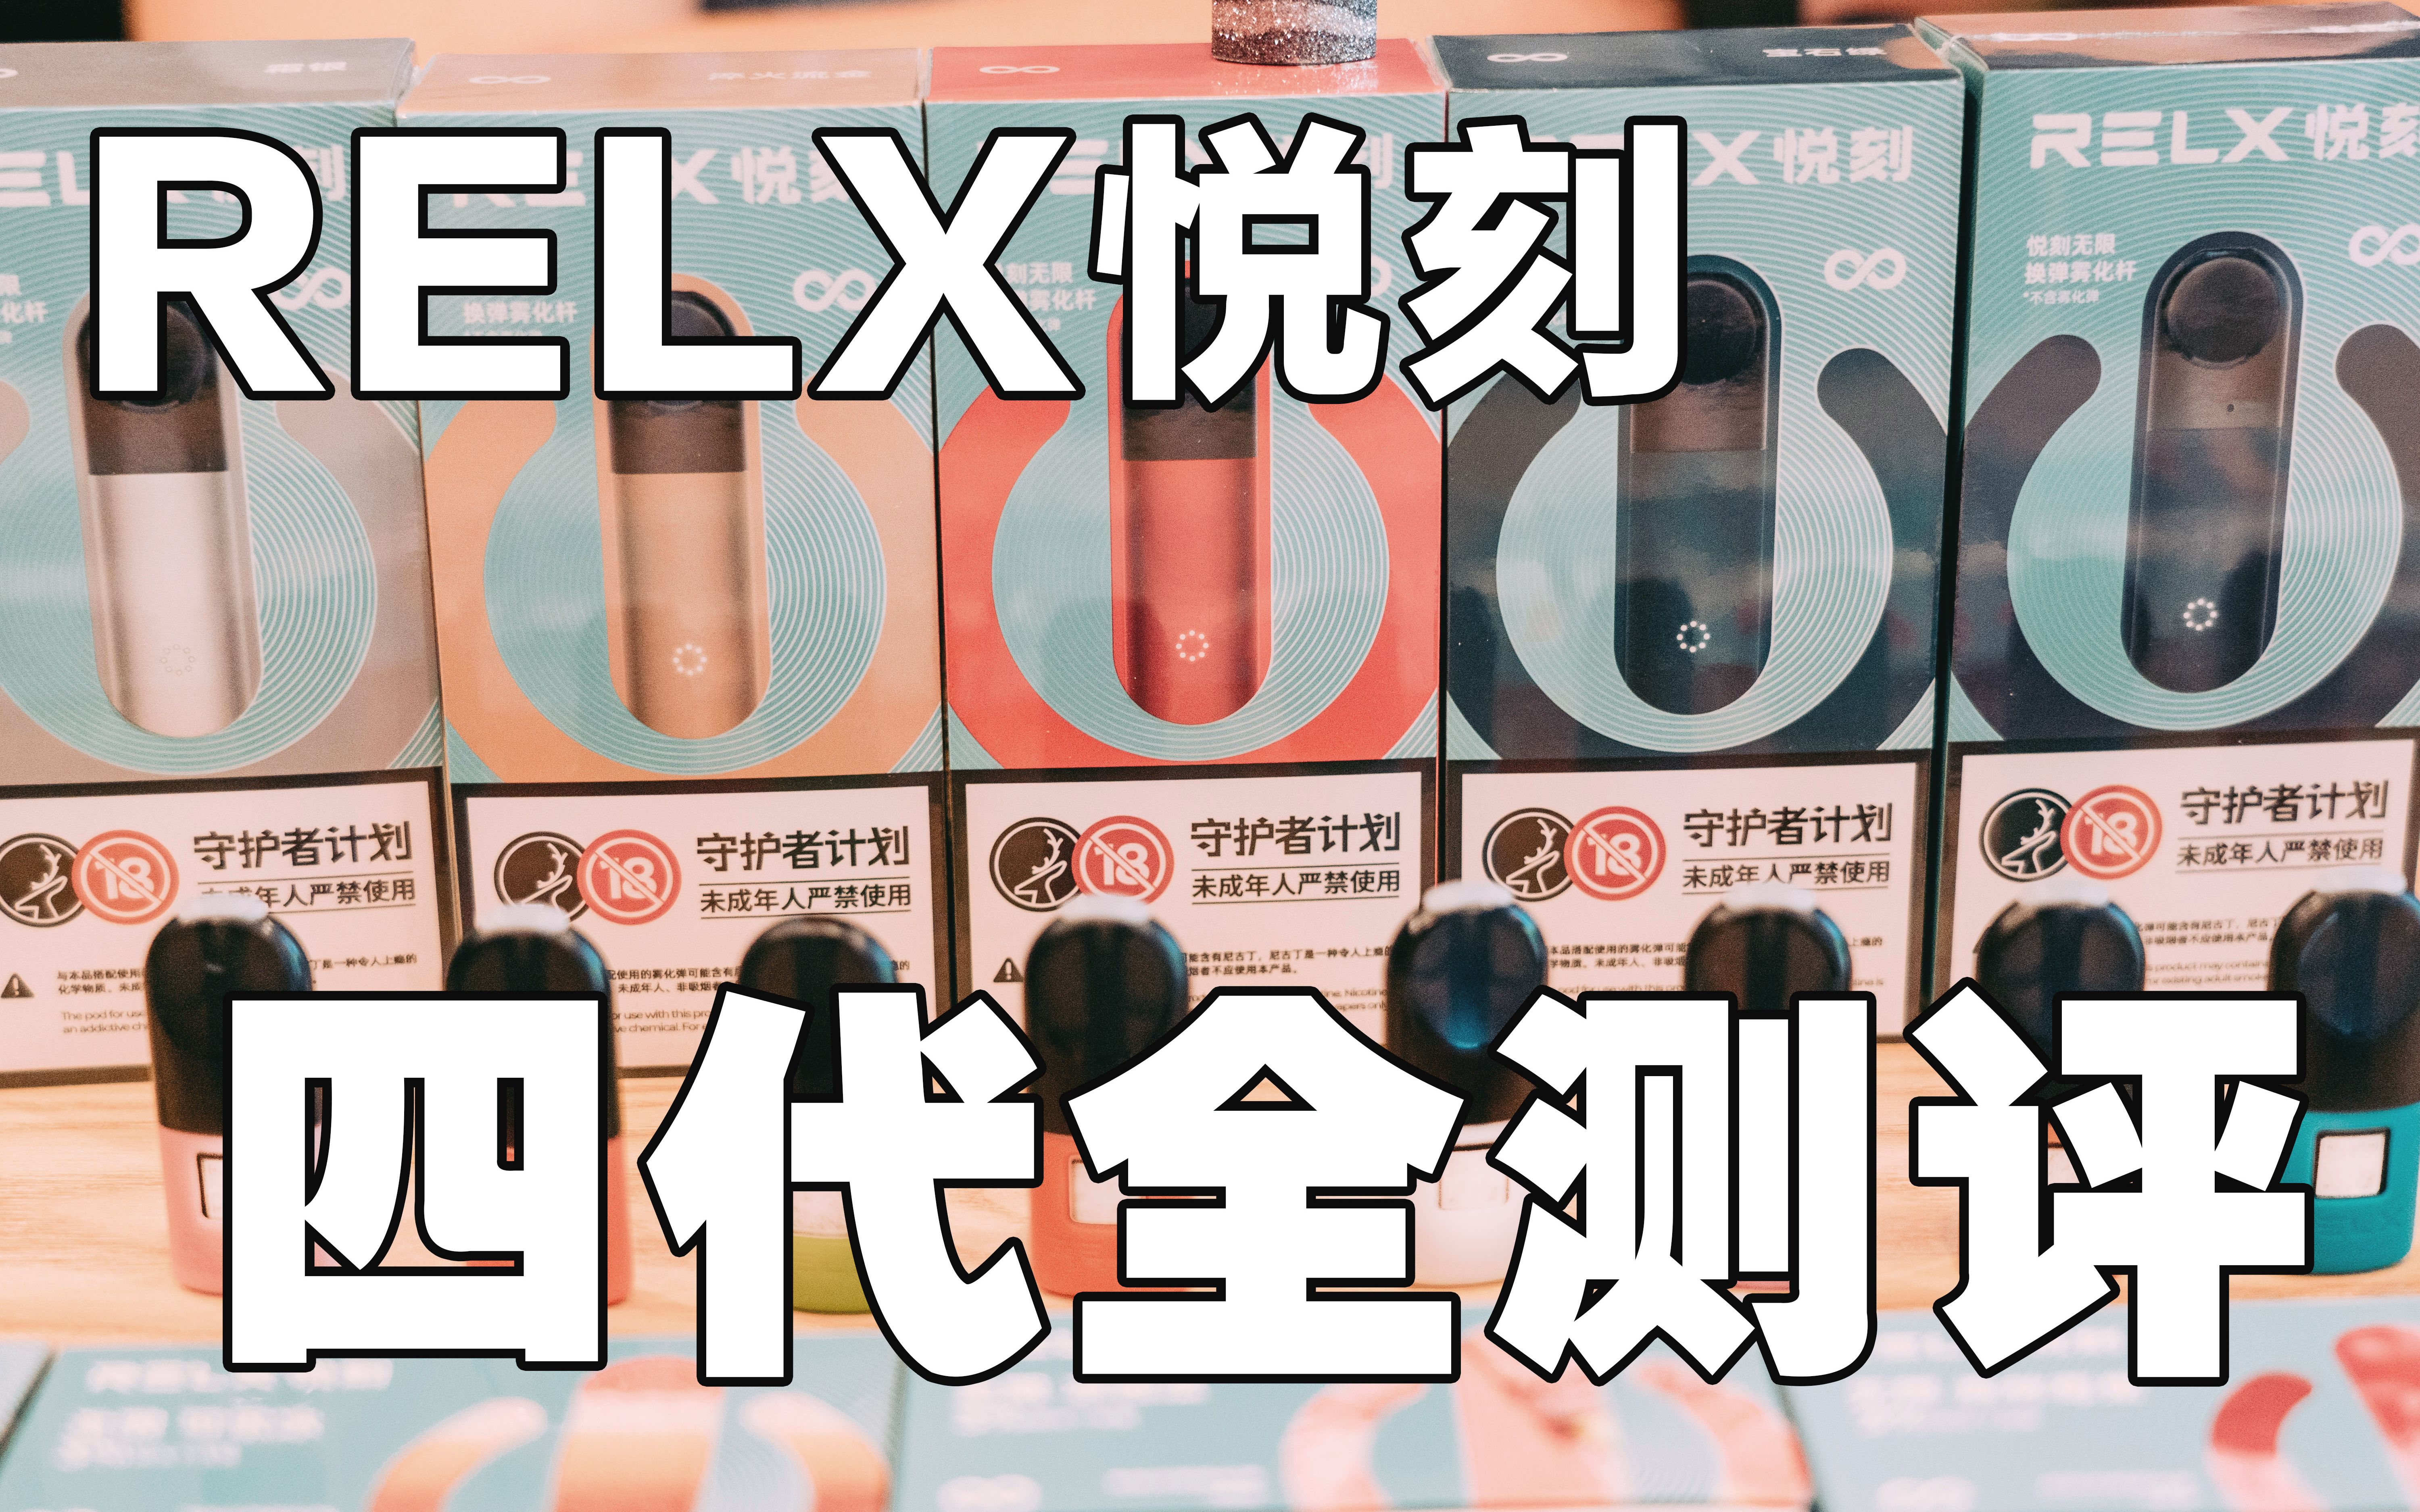 【悦刻 relx 电子烟】四代无限全系列横向对比测评,全是干货!